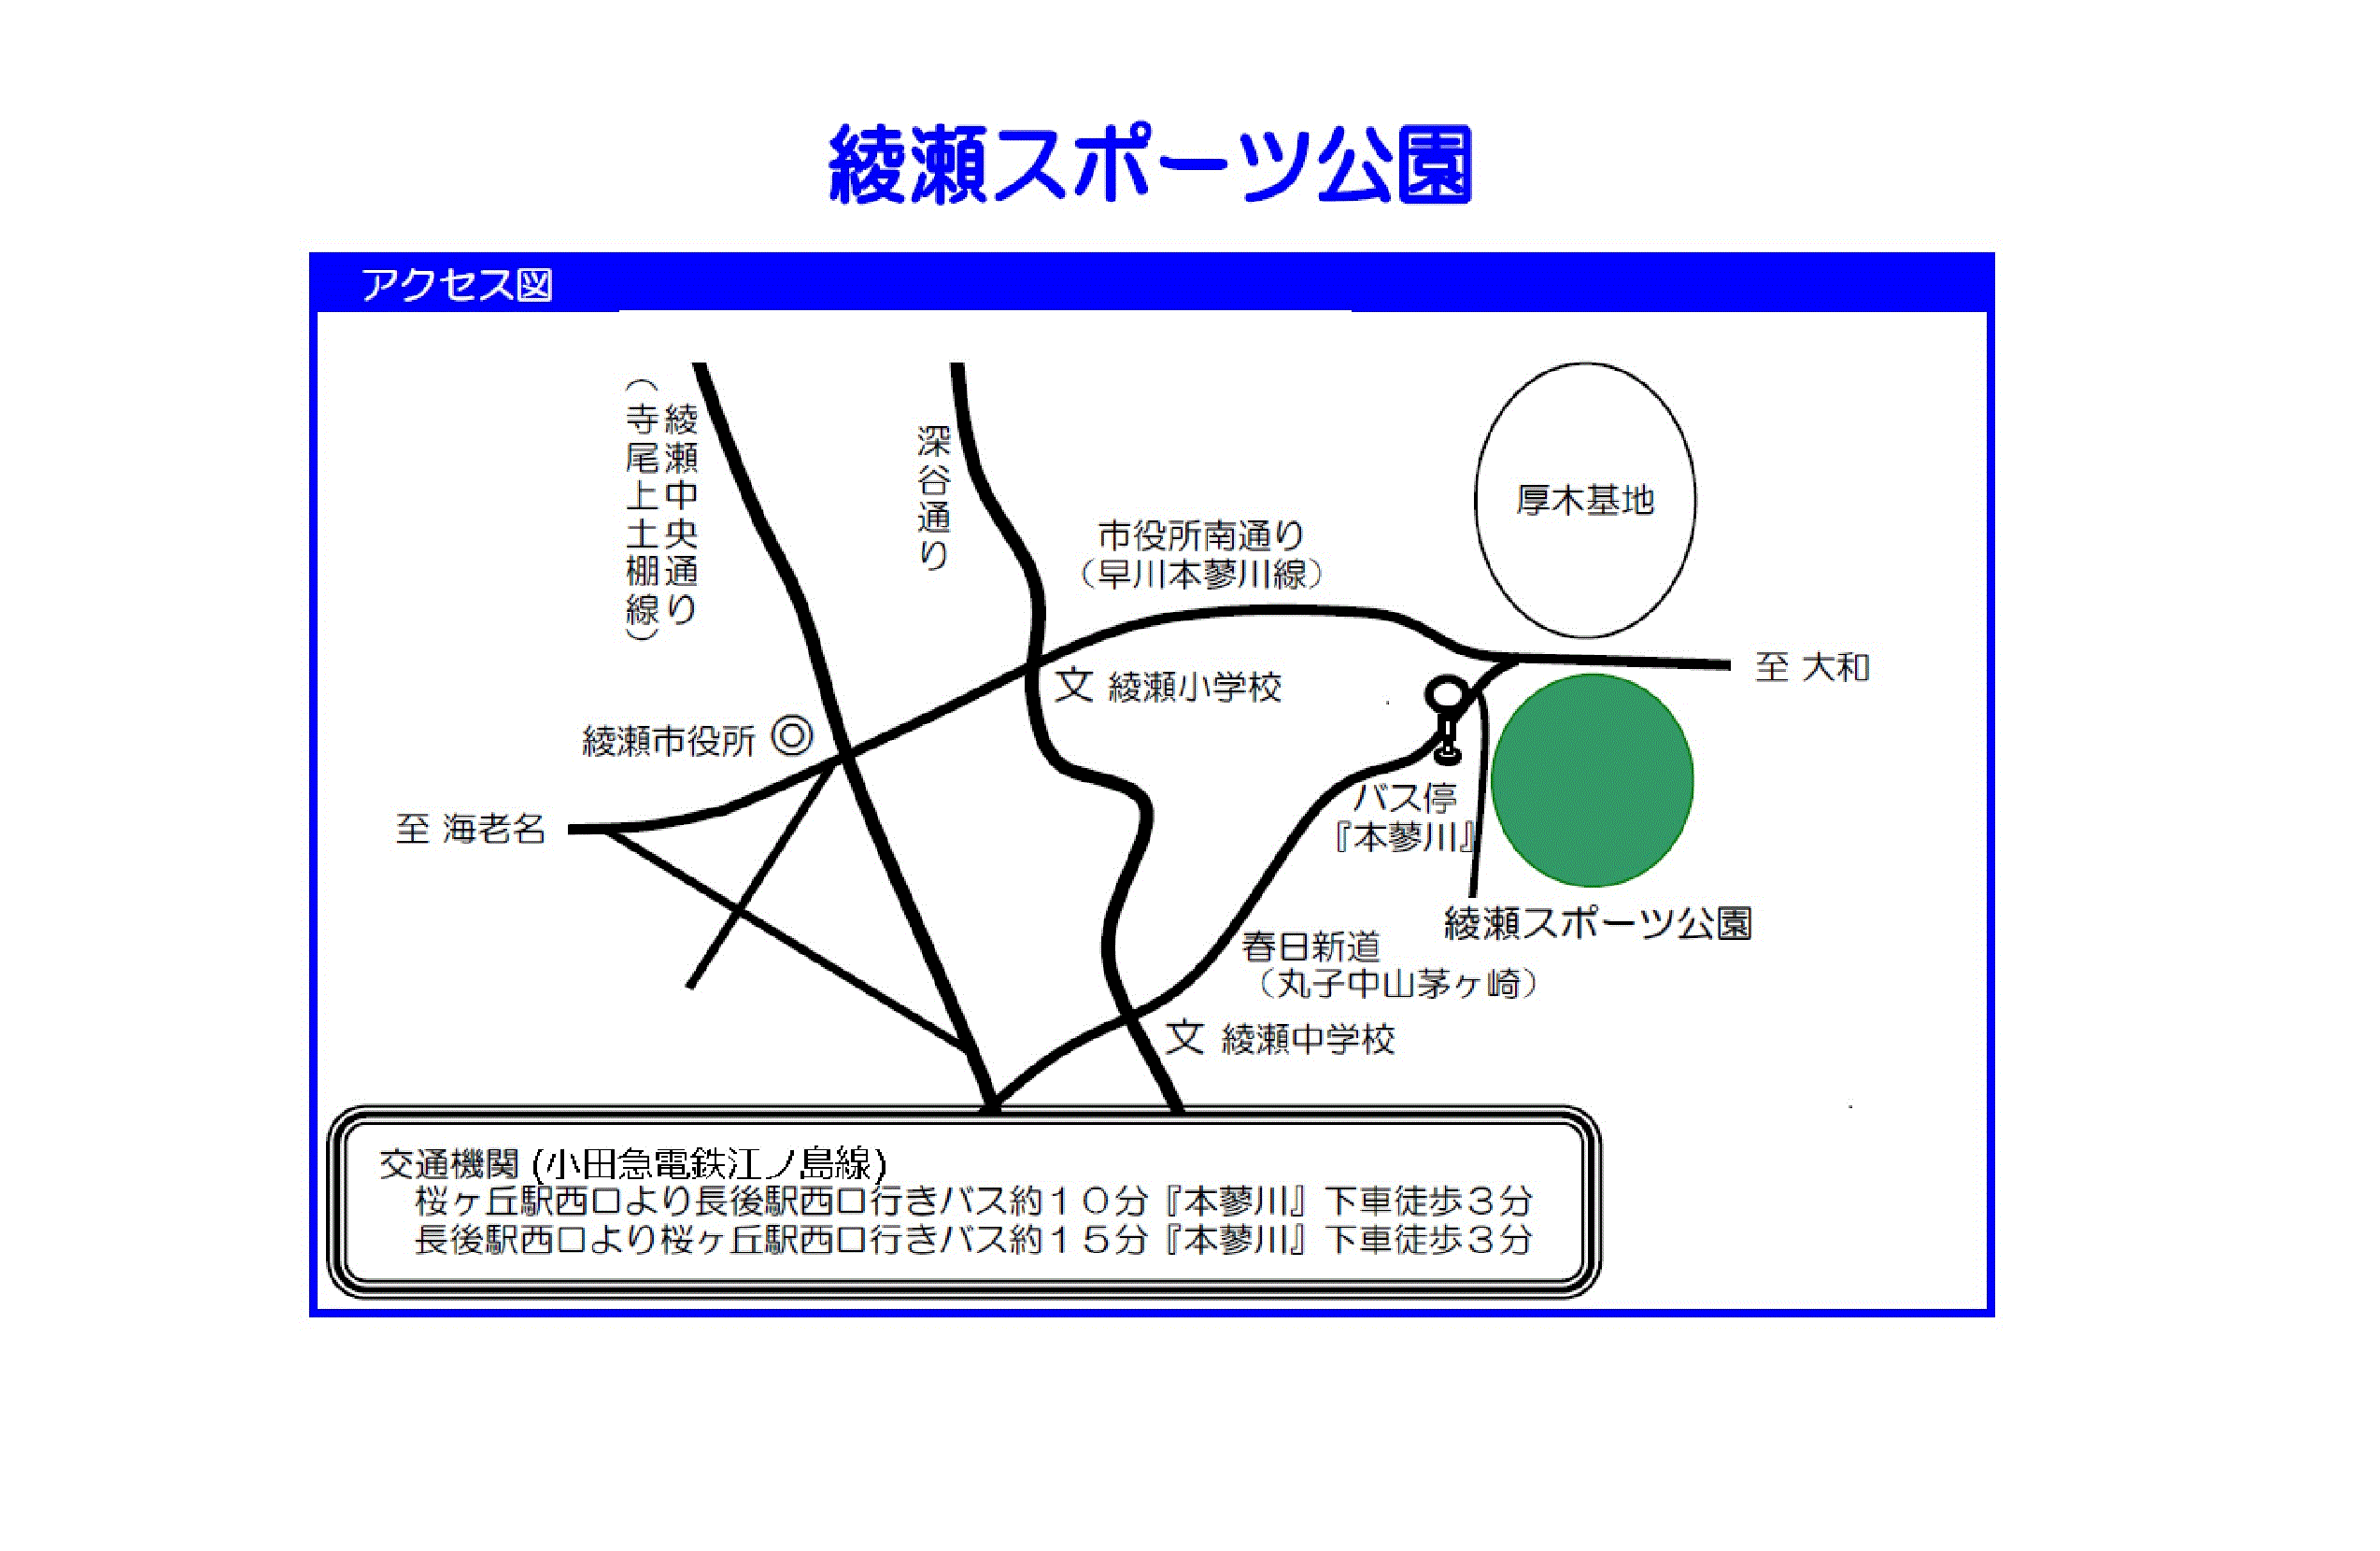 綾瀬スポーツ公園 周辺からの簡易アクセス図